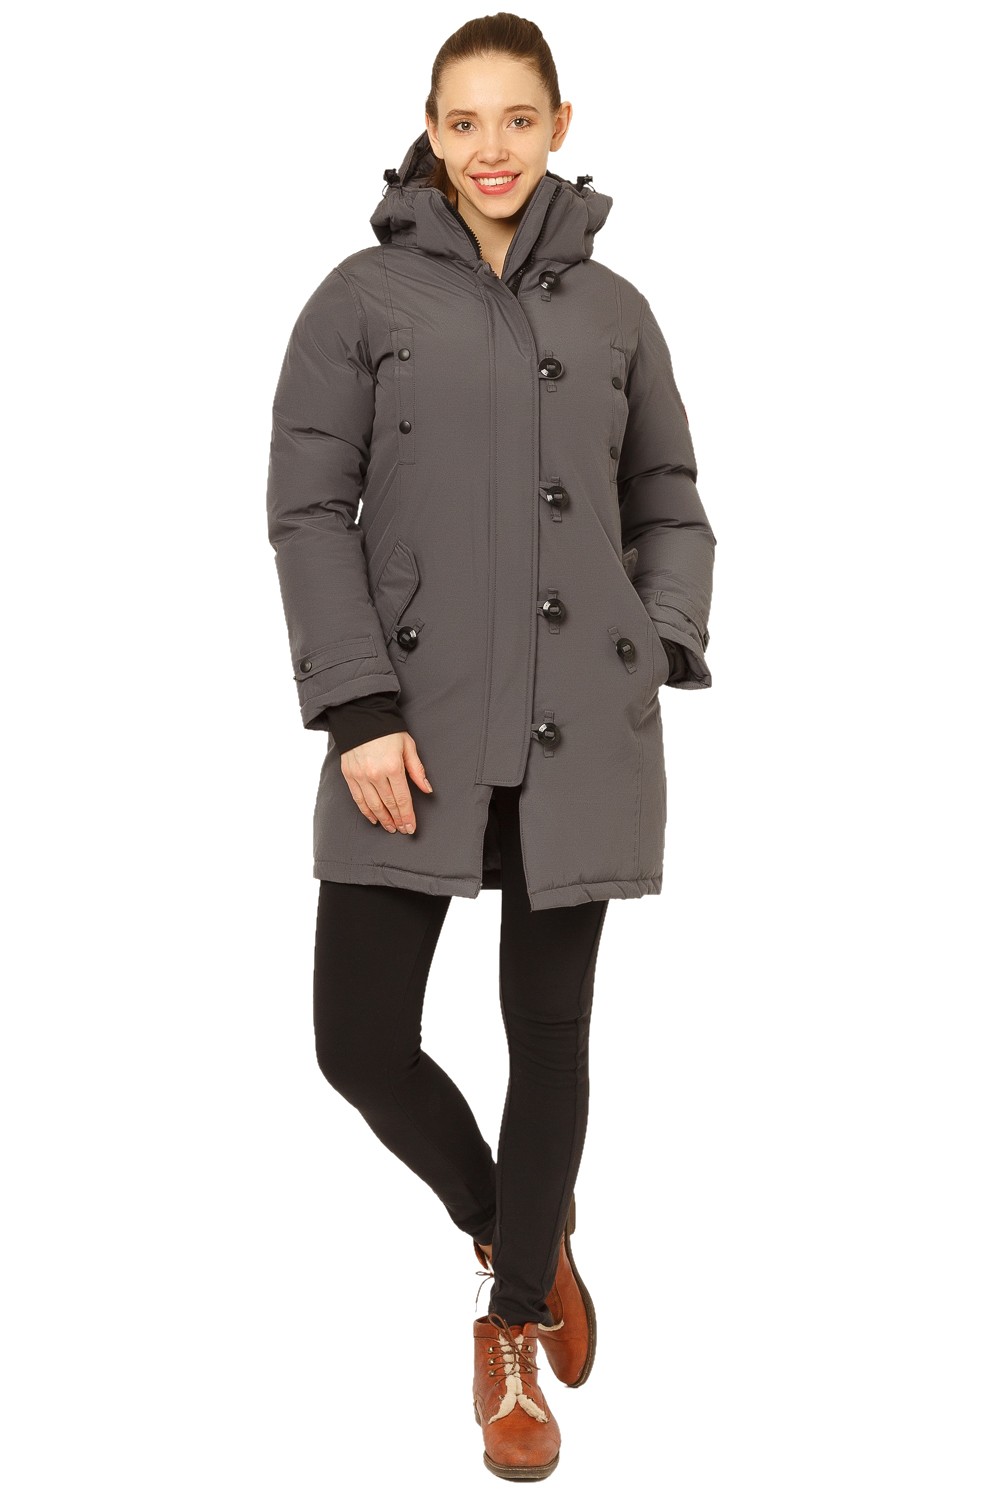 Купить Куртка парка зимняя женская темно-серого цвета 1802TC